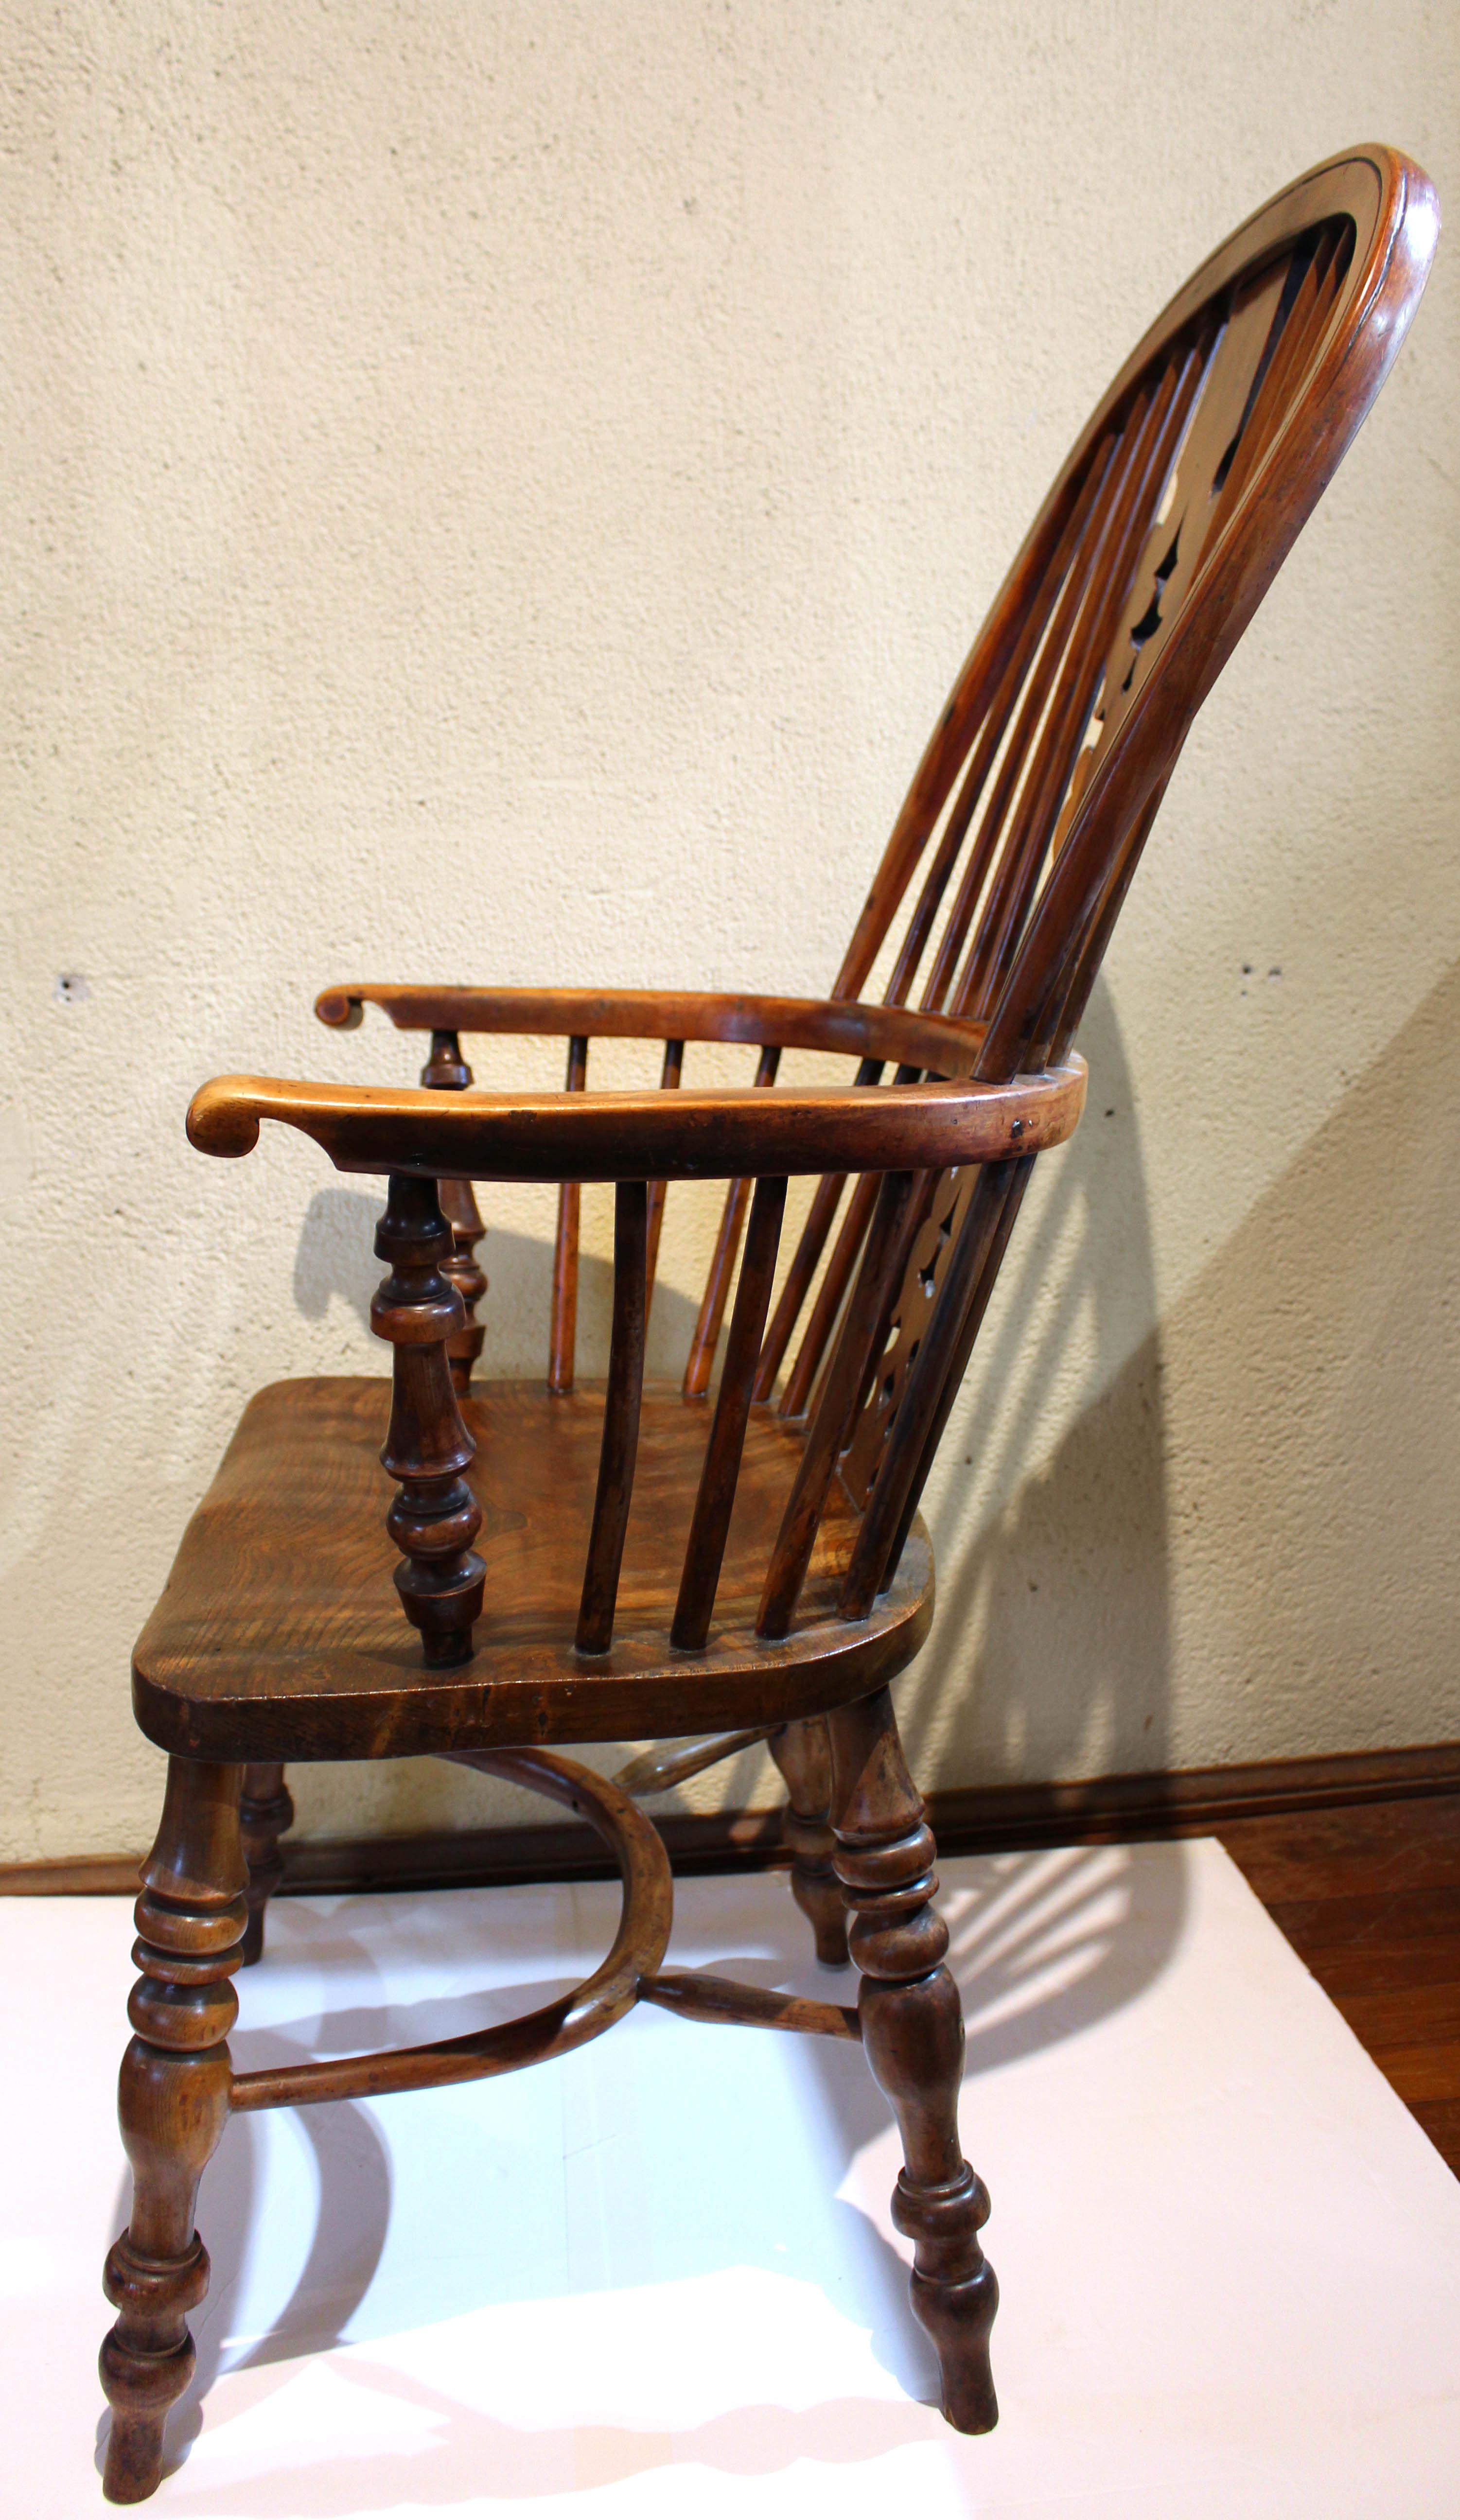 CIRCA 1830 Englischer Windsor-Sessel mit hoher Rückenlehne, Eibenholz. Dieser robuste, bequeme Stuhl hat die gewünschten 